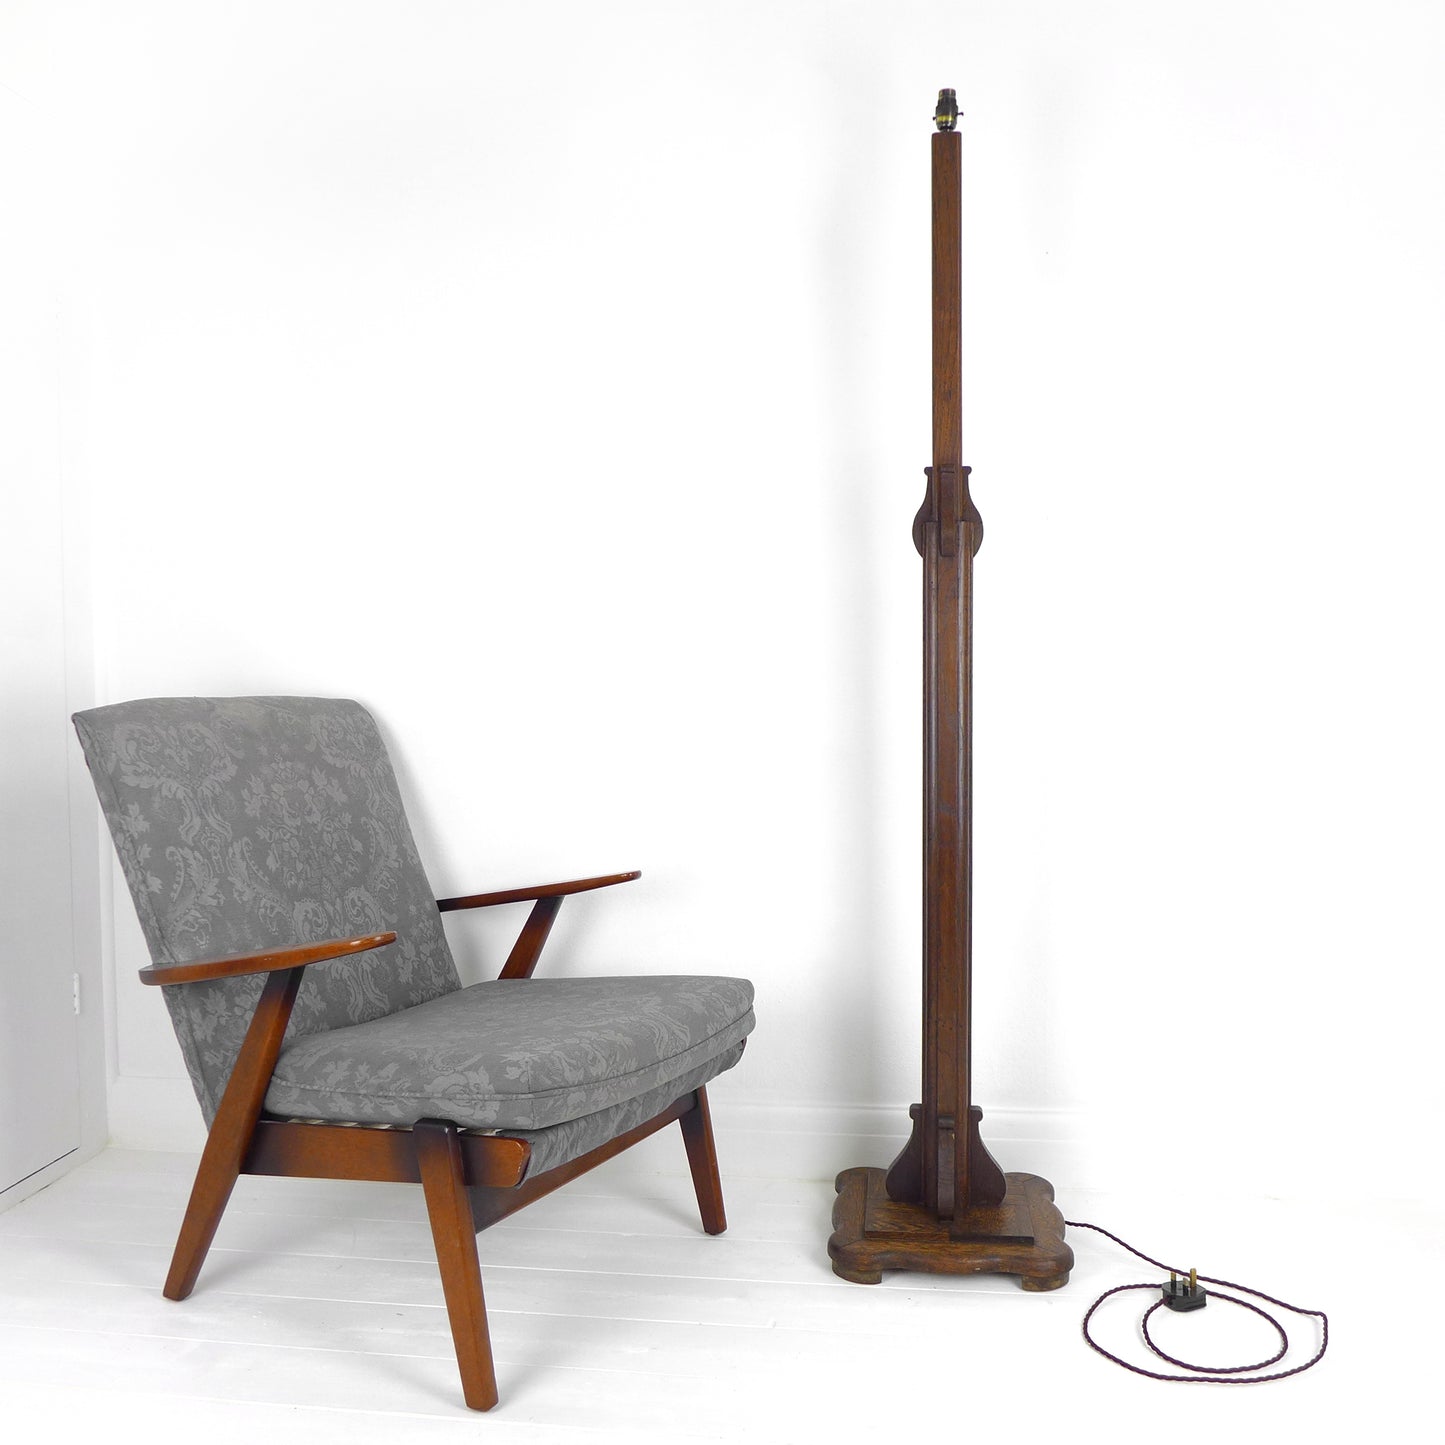 Refurbished Arts & Crafts / Art Nouveau Oak Floor Lamp / Standard Lamp Base